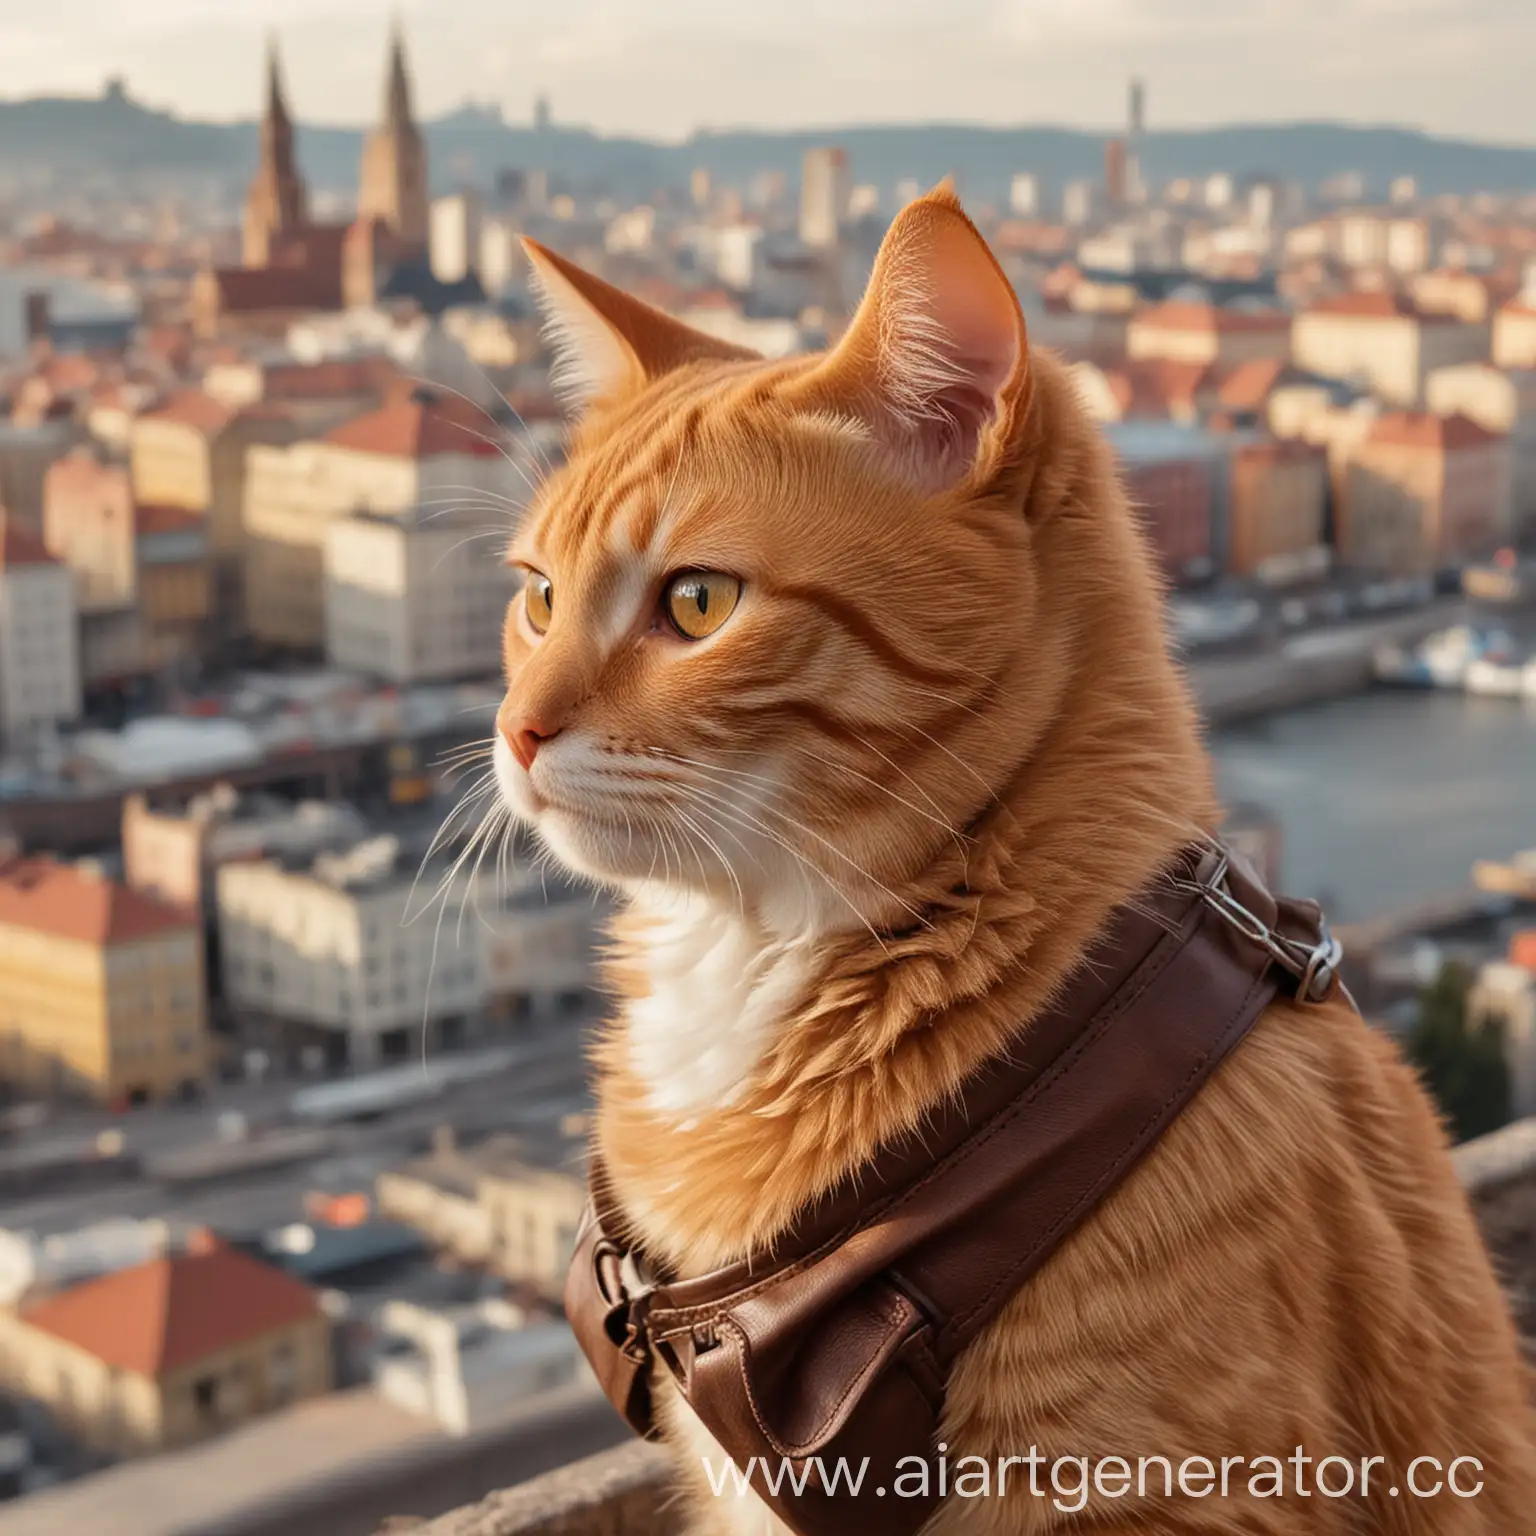 Рыжий кот с коричневым мешочком на шее смотрит в даль города

